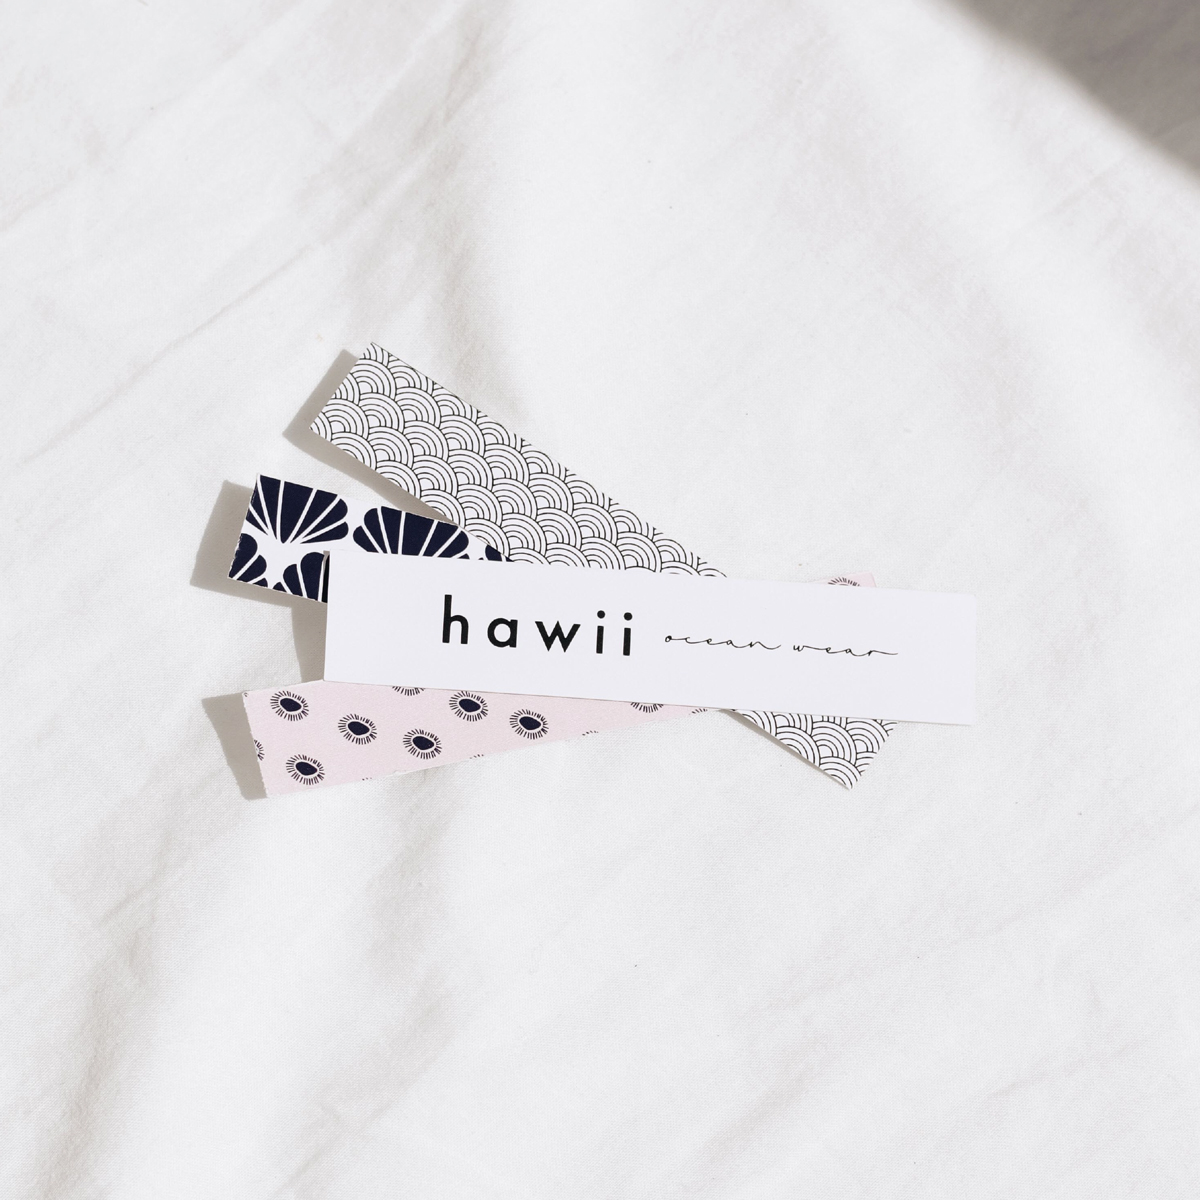 Branding Project for Hawii Ocean Wear by Zuncho Studio